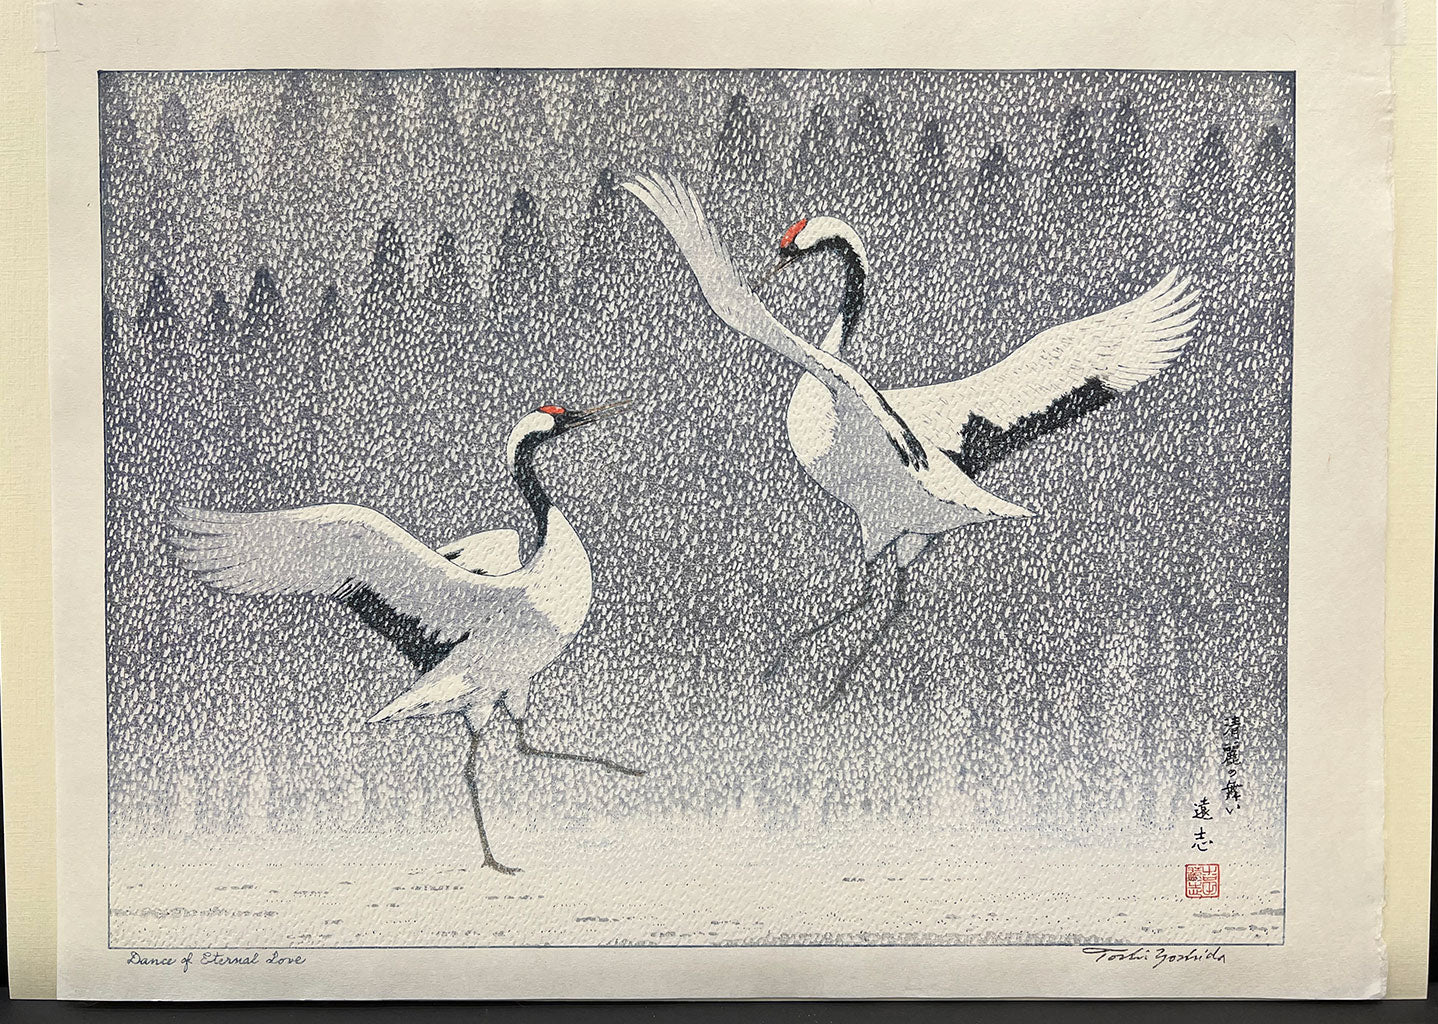 Woodblock print "Dance of Eternal Love" by Yoshida Toshi Published by Yoshida Studio